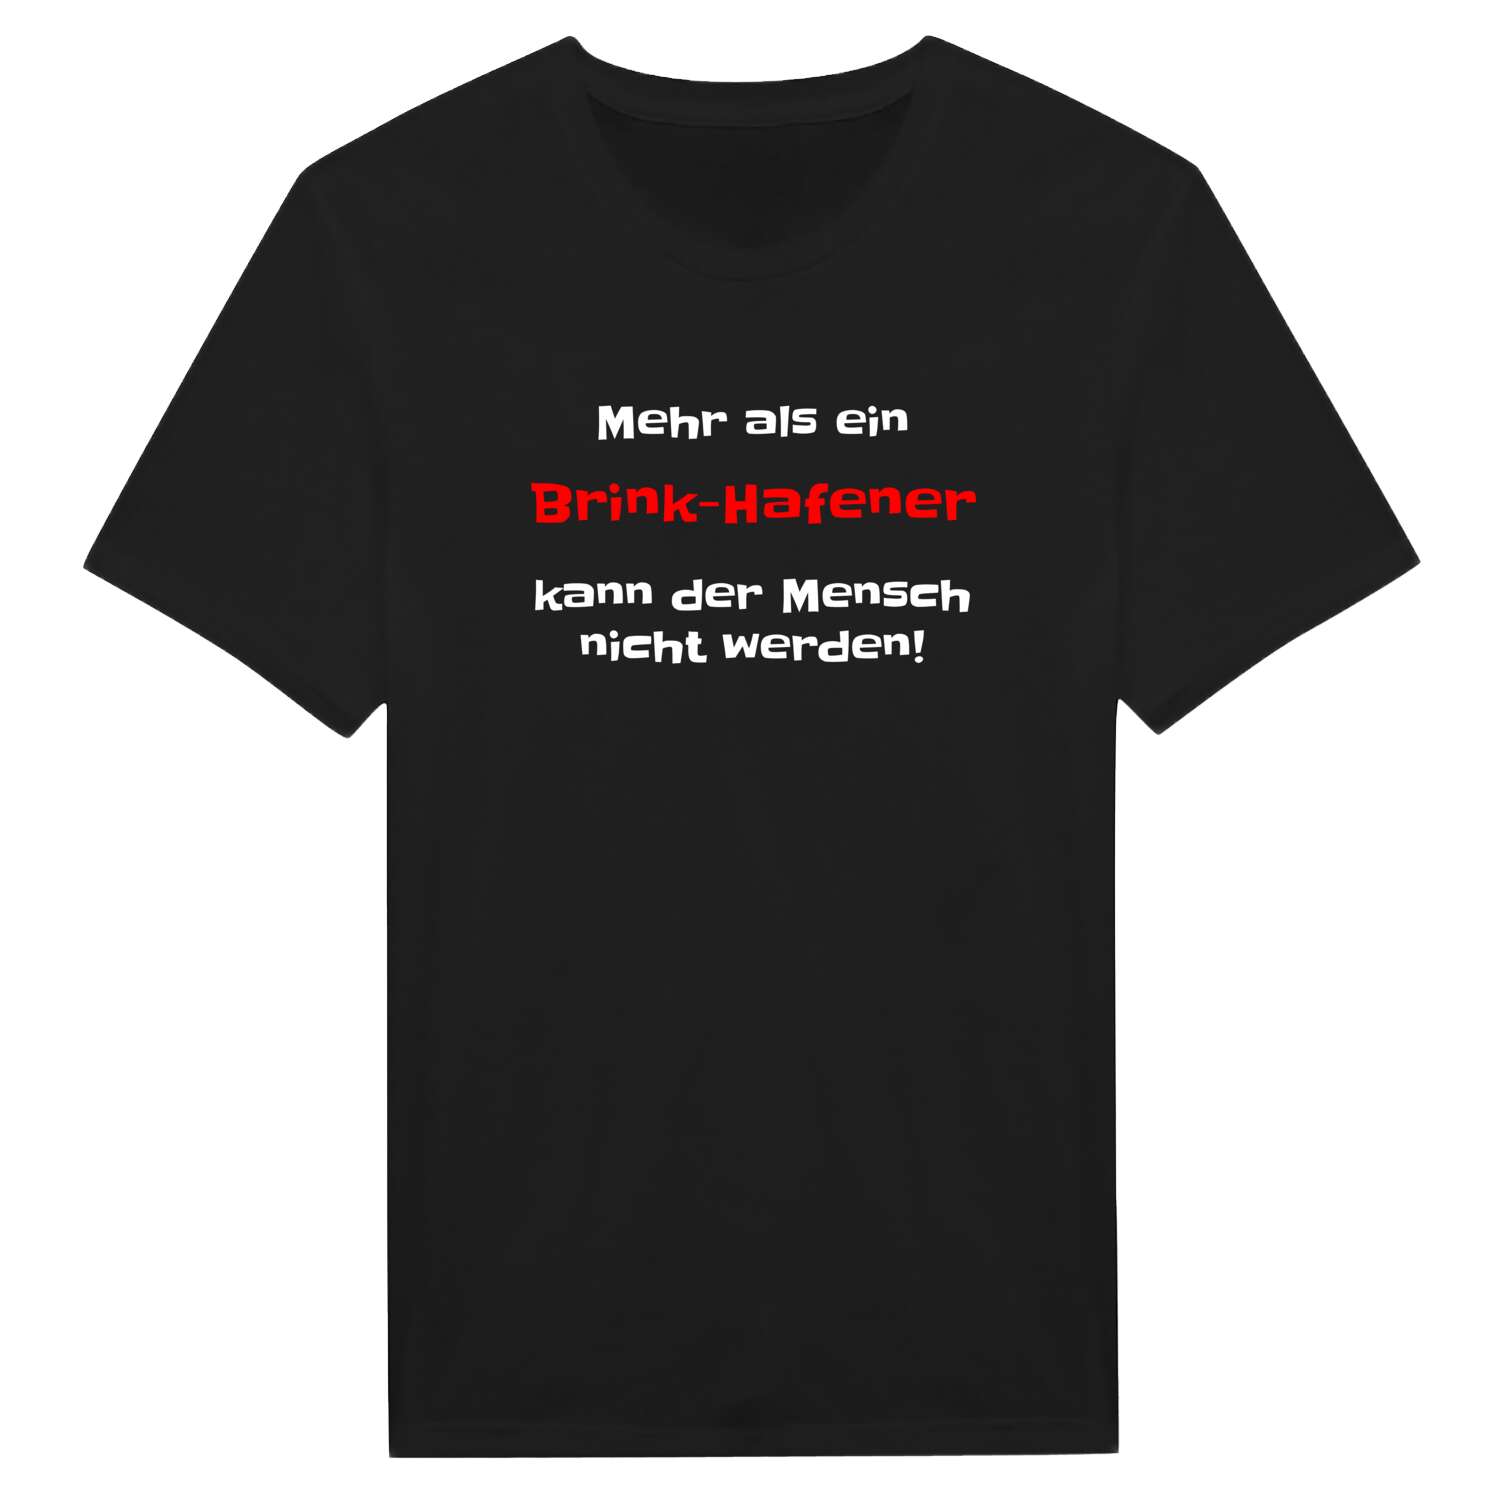 Brink-Hafen T-Shirt »Mehr als ein«